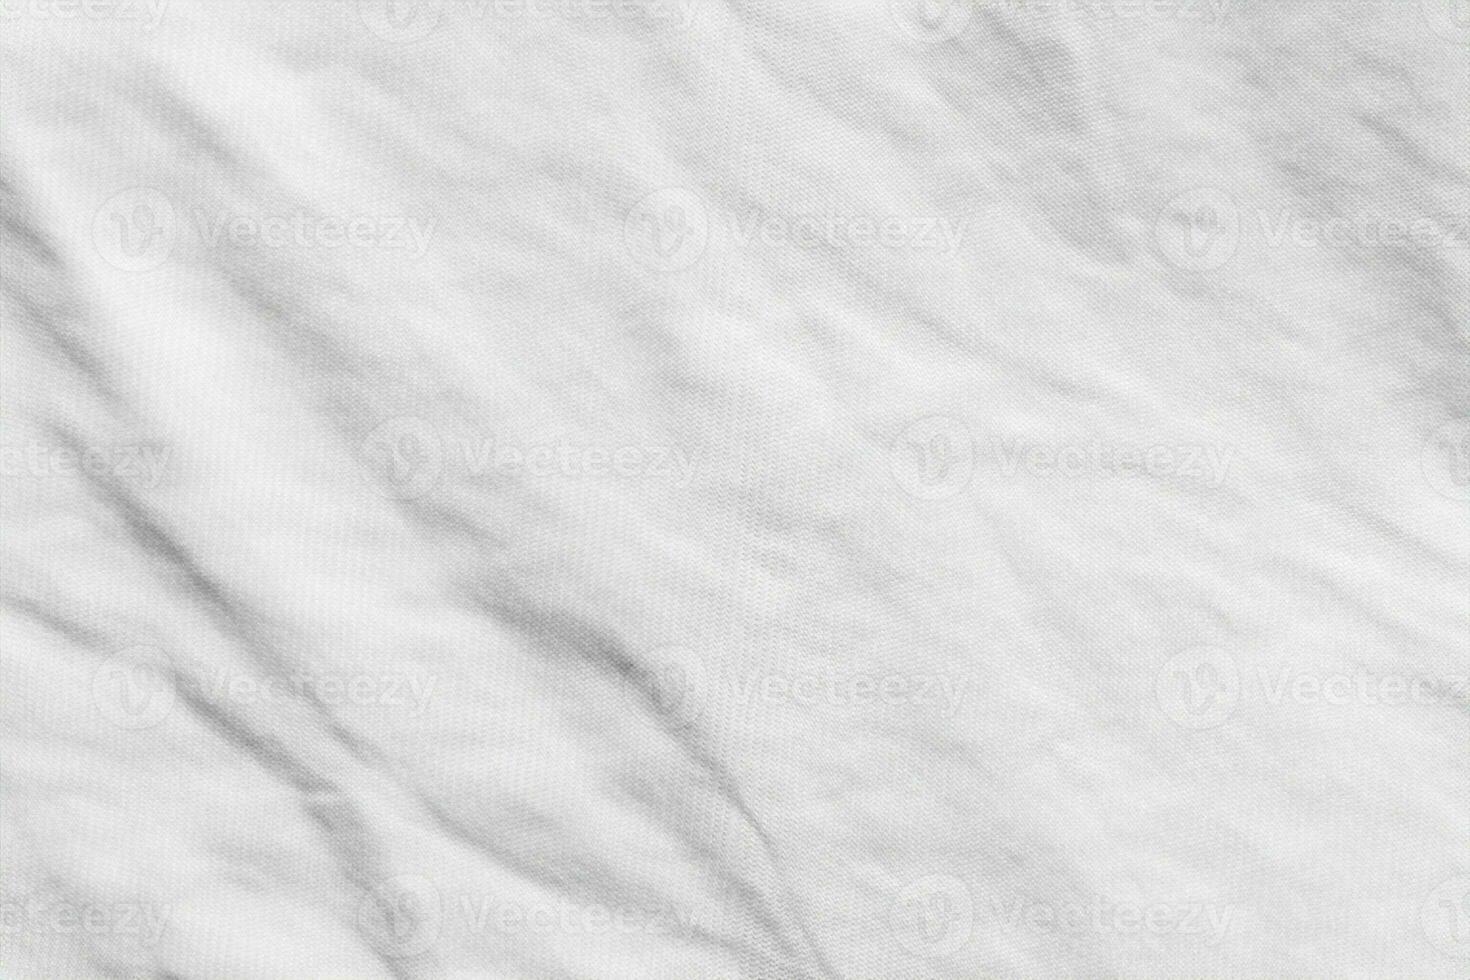 fondo de patrón de textura de tela de tela de camisa de algodón arrugado blanco foto